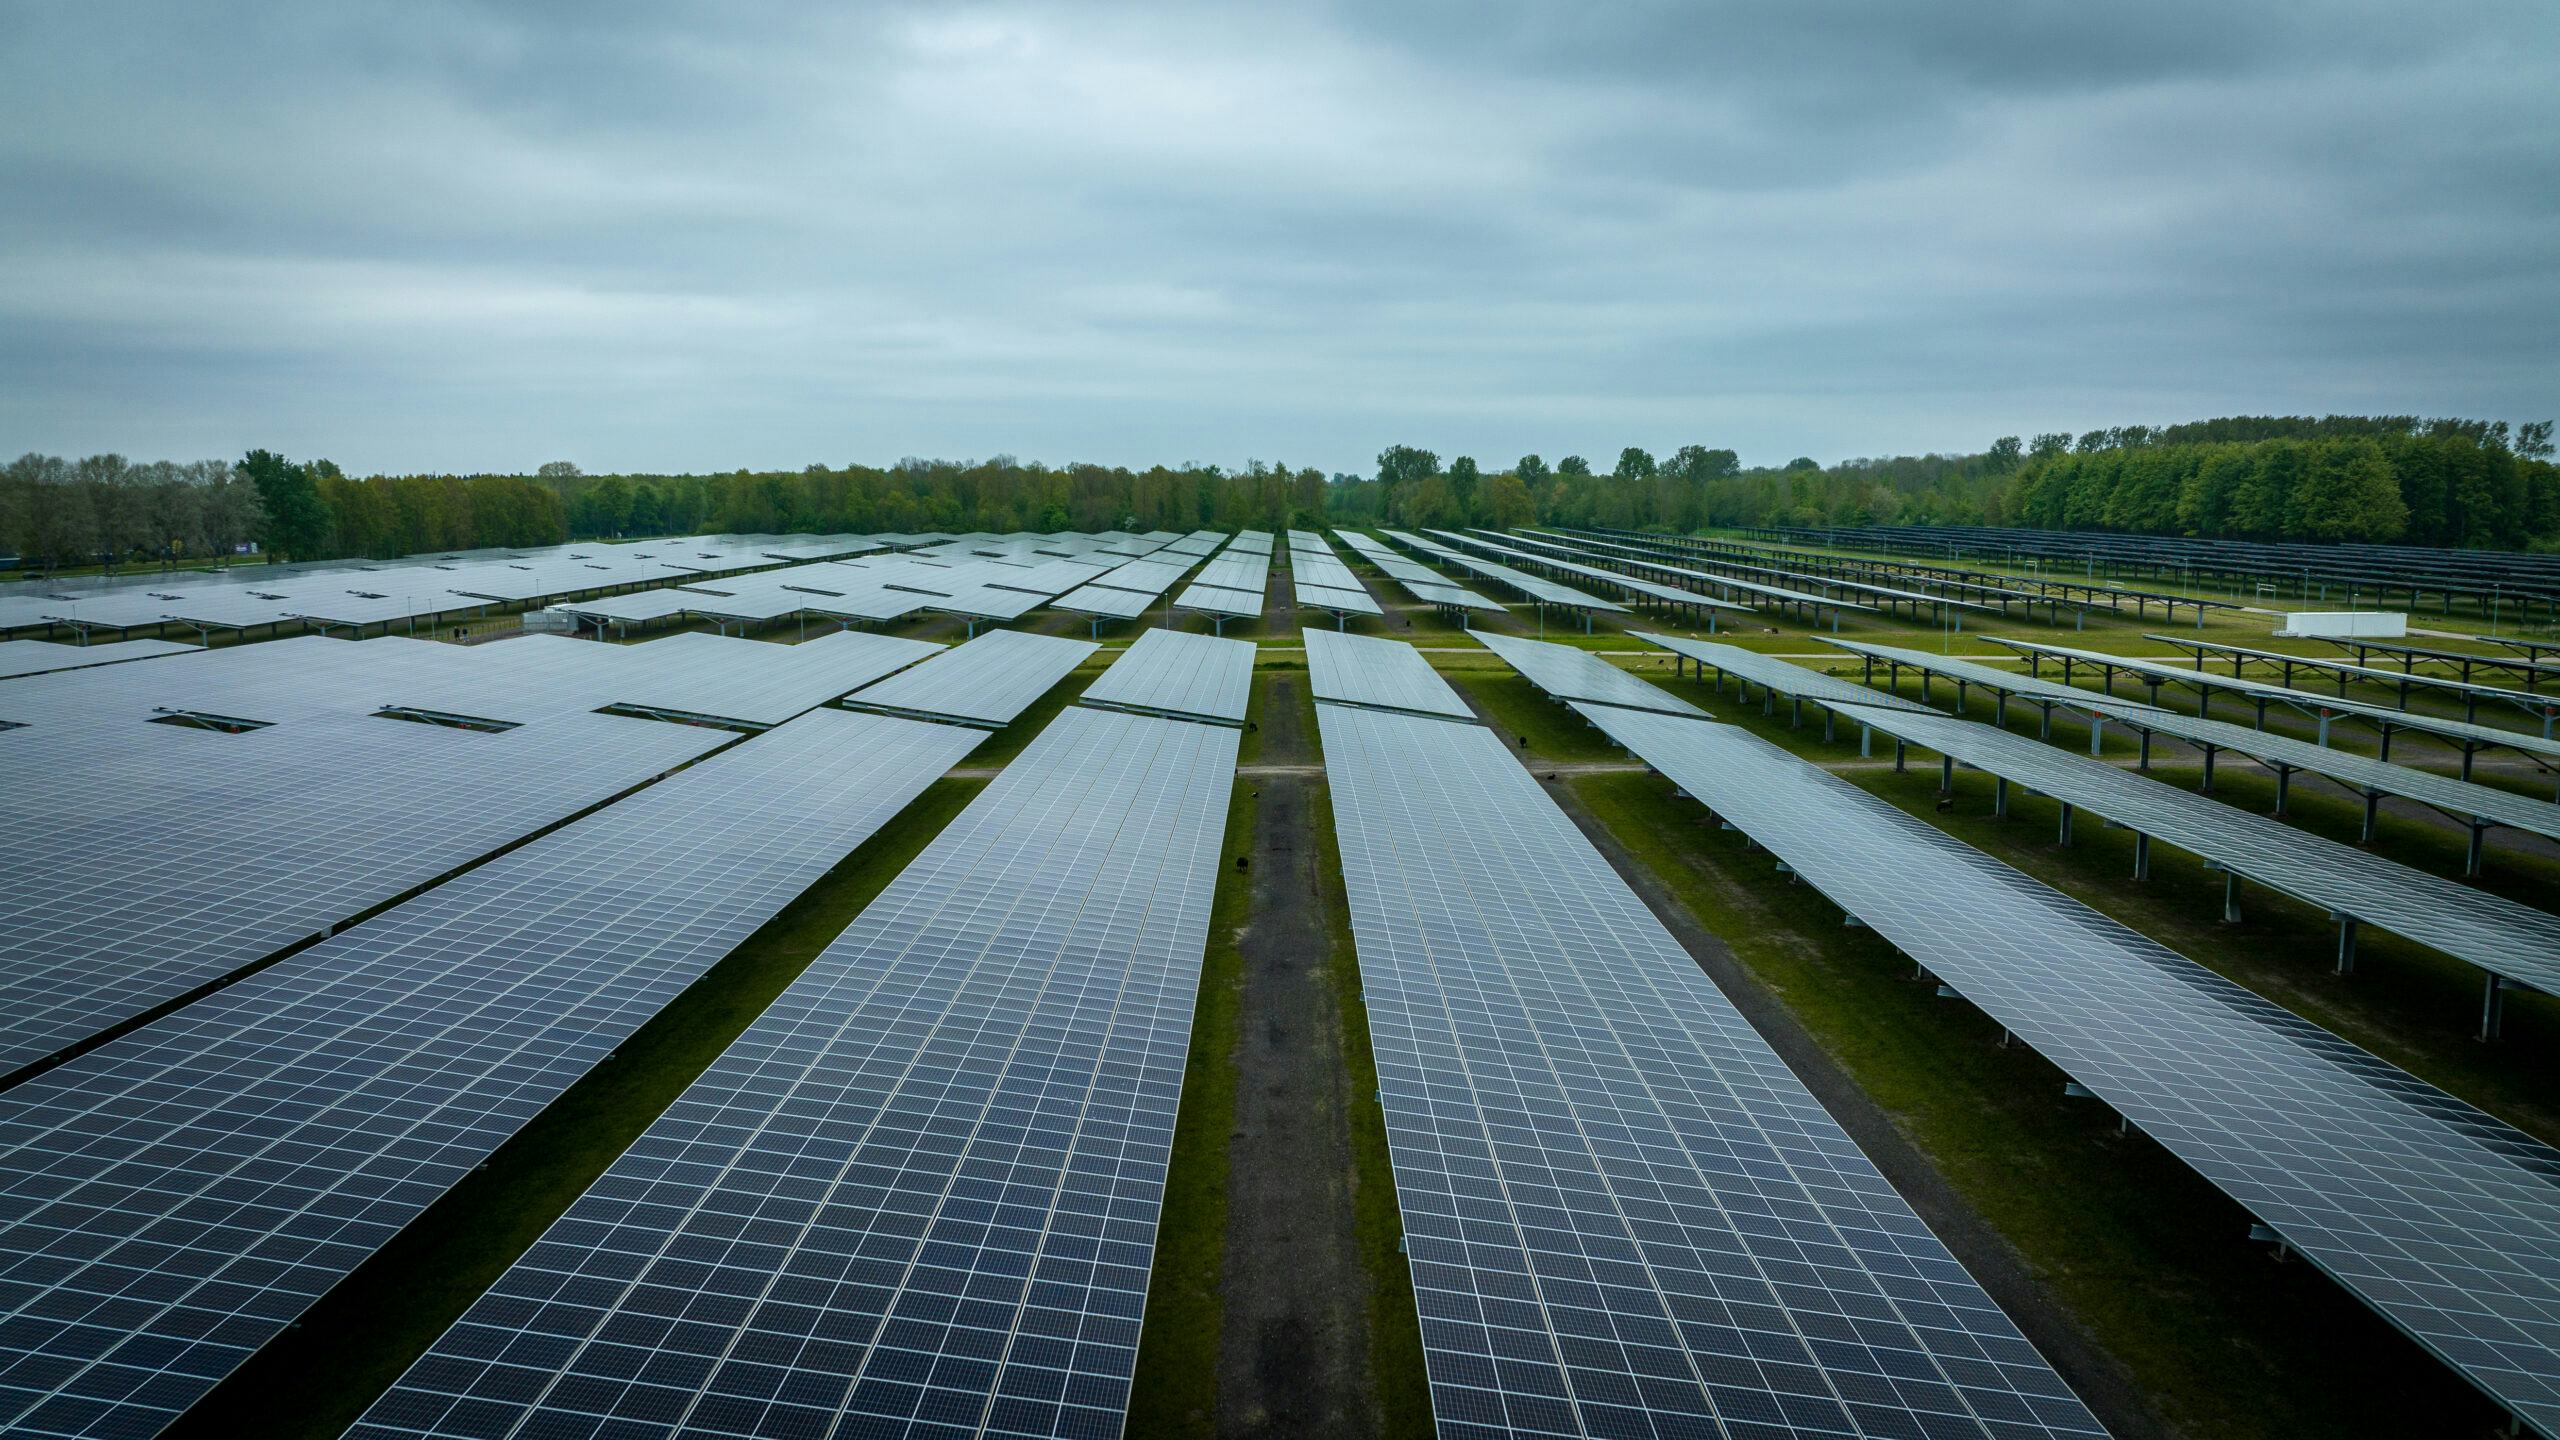 Nederland oogst haar zonne-energie voorlopig vooral op daken en in weilanden